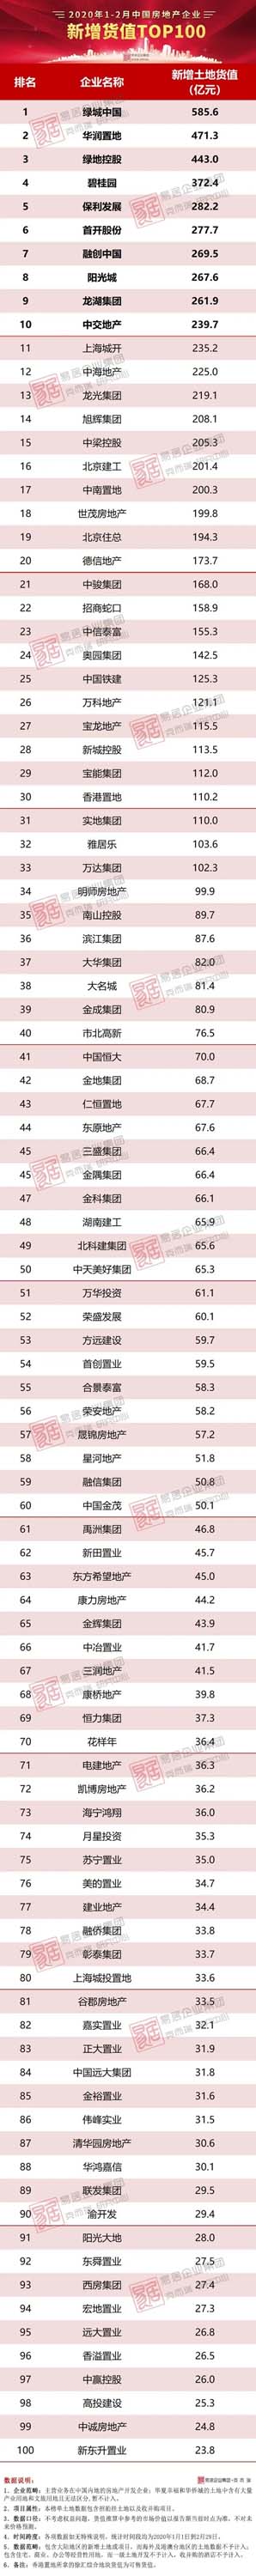 1-2月中国房地产企业新增货值TOP100